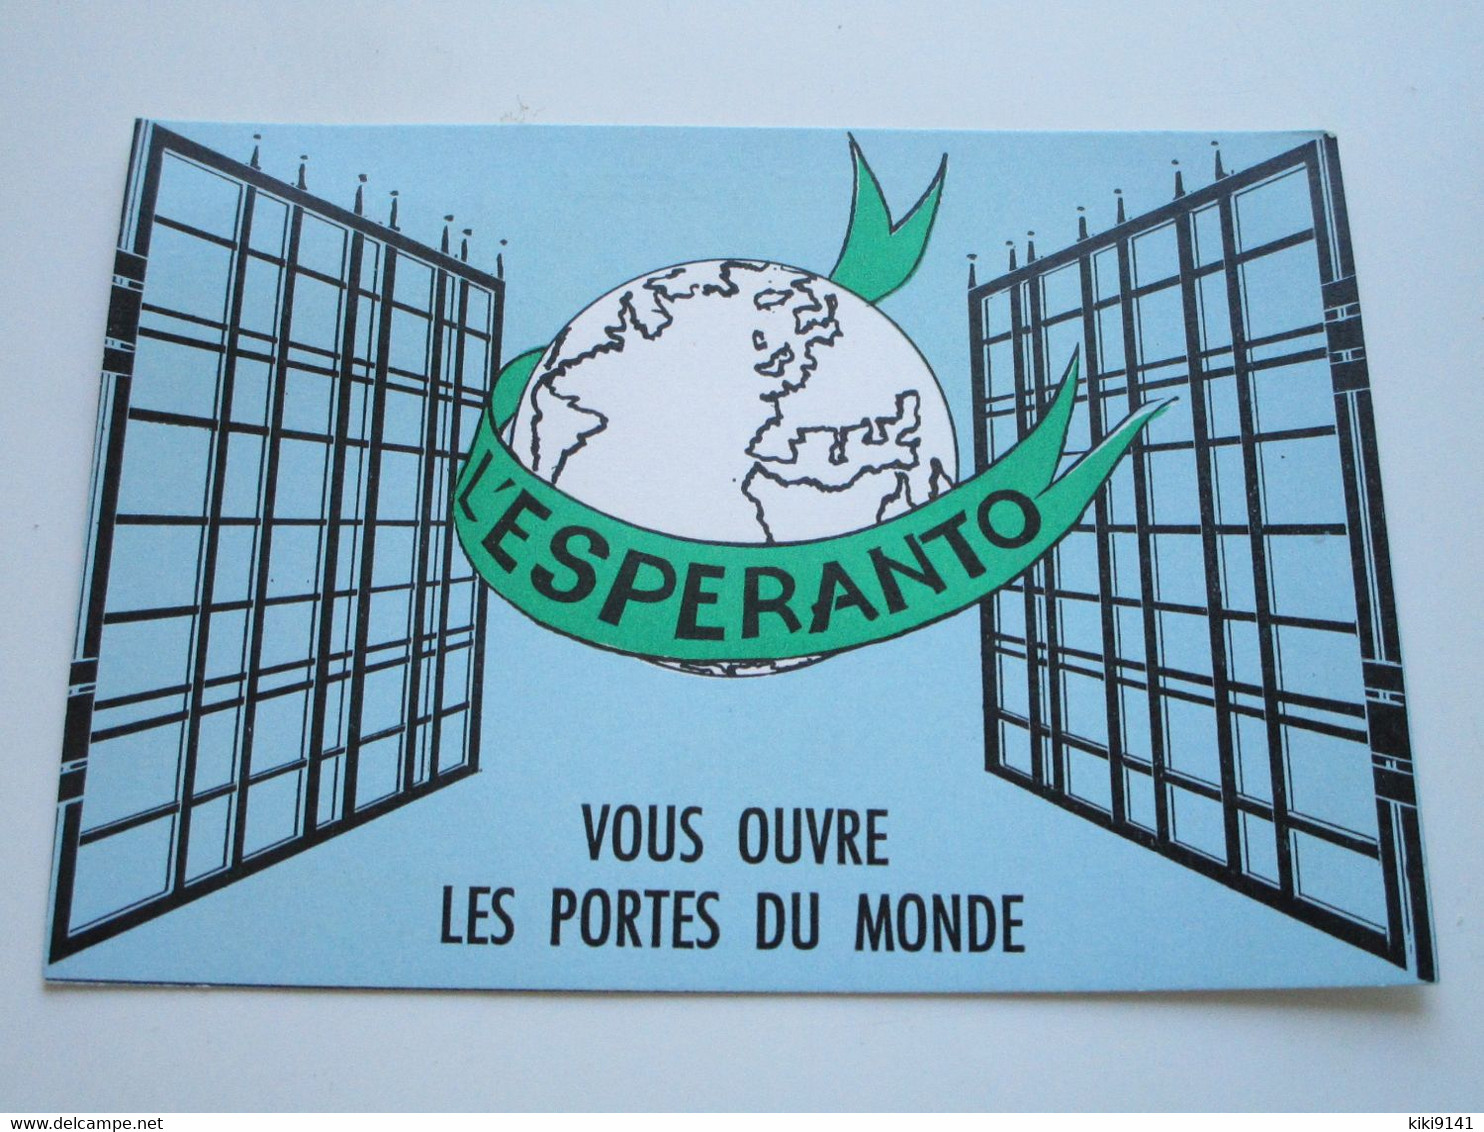 L'ESPERANTO VOUS OUVRE LES PORTES DU MONDE - Esperanto